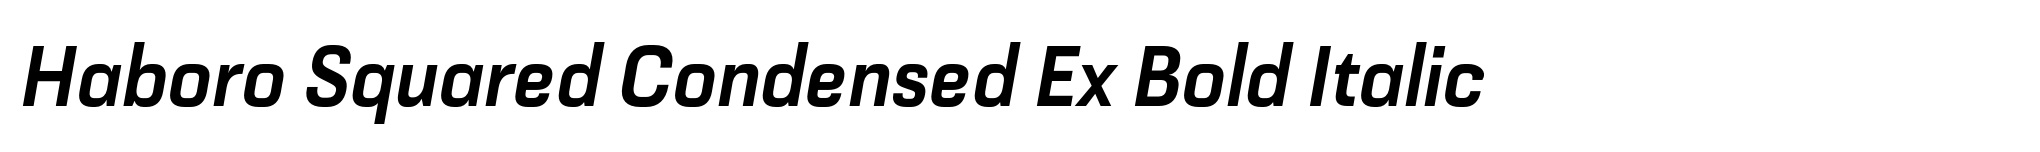 Haboro Squared Condensed Ex Bold Italic image